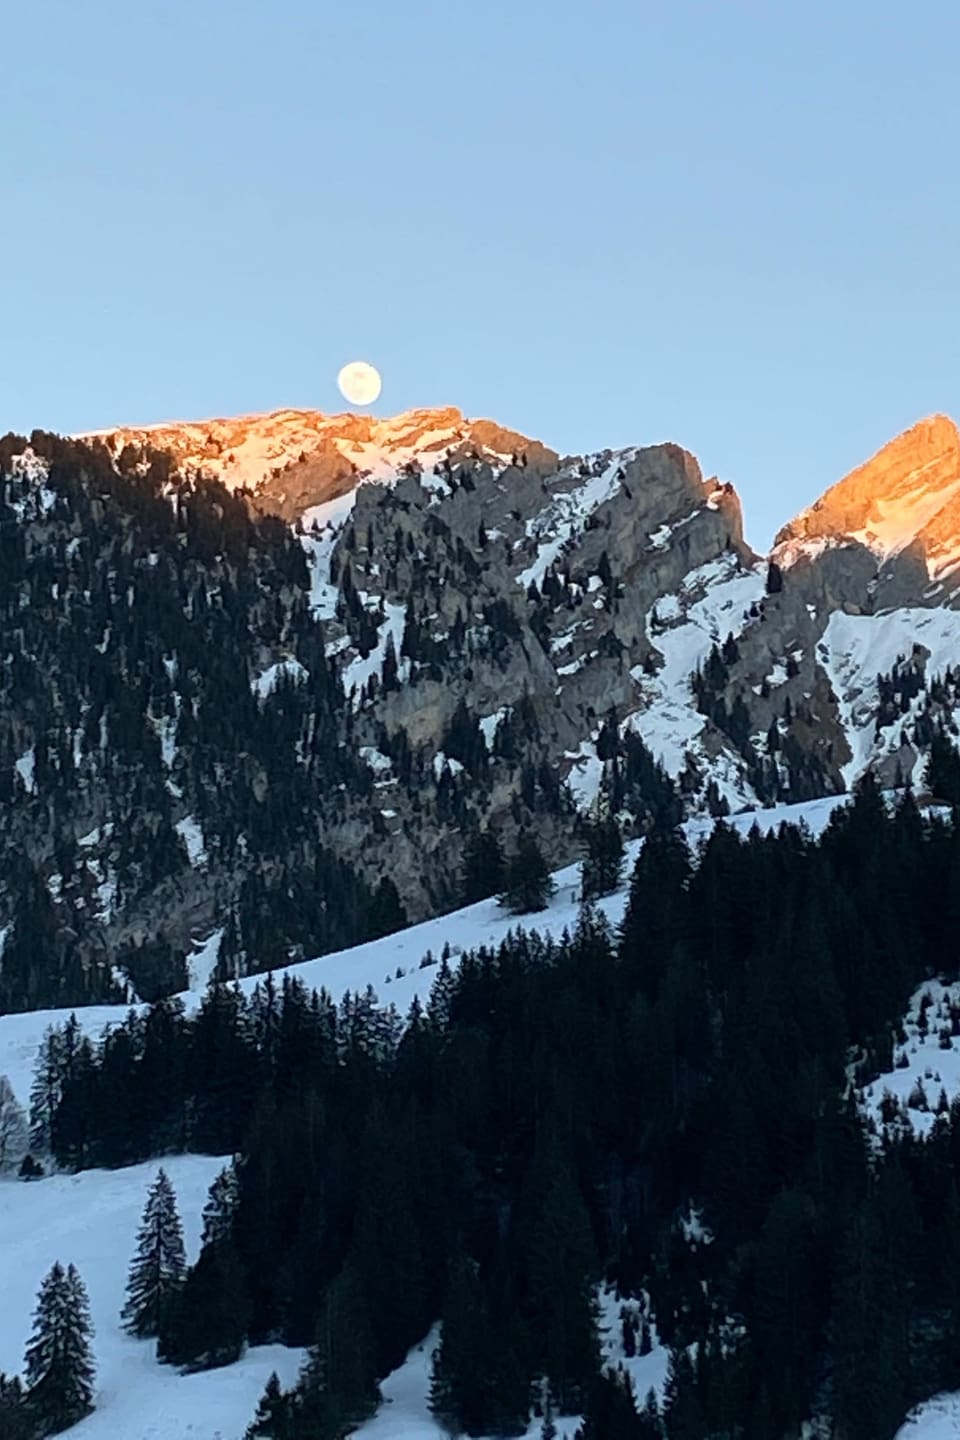 Der Mond scheint über den Bergen.